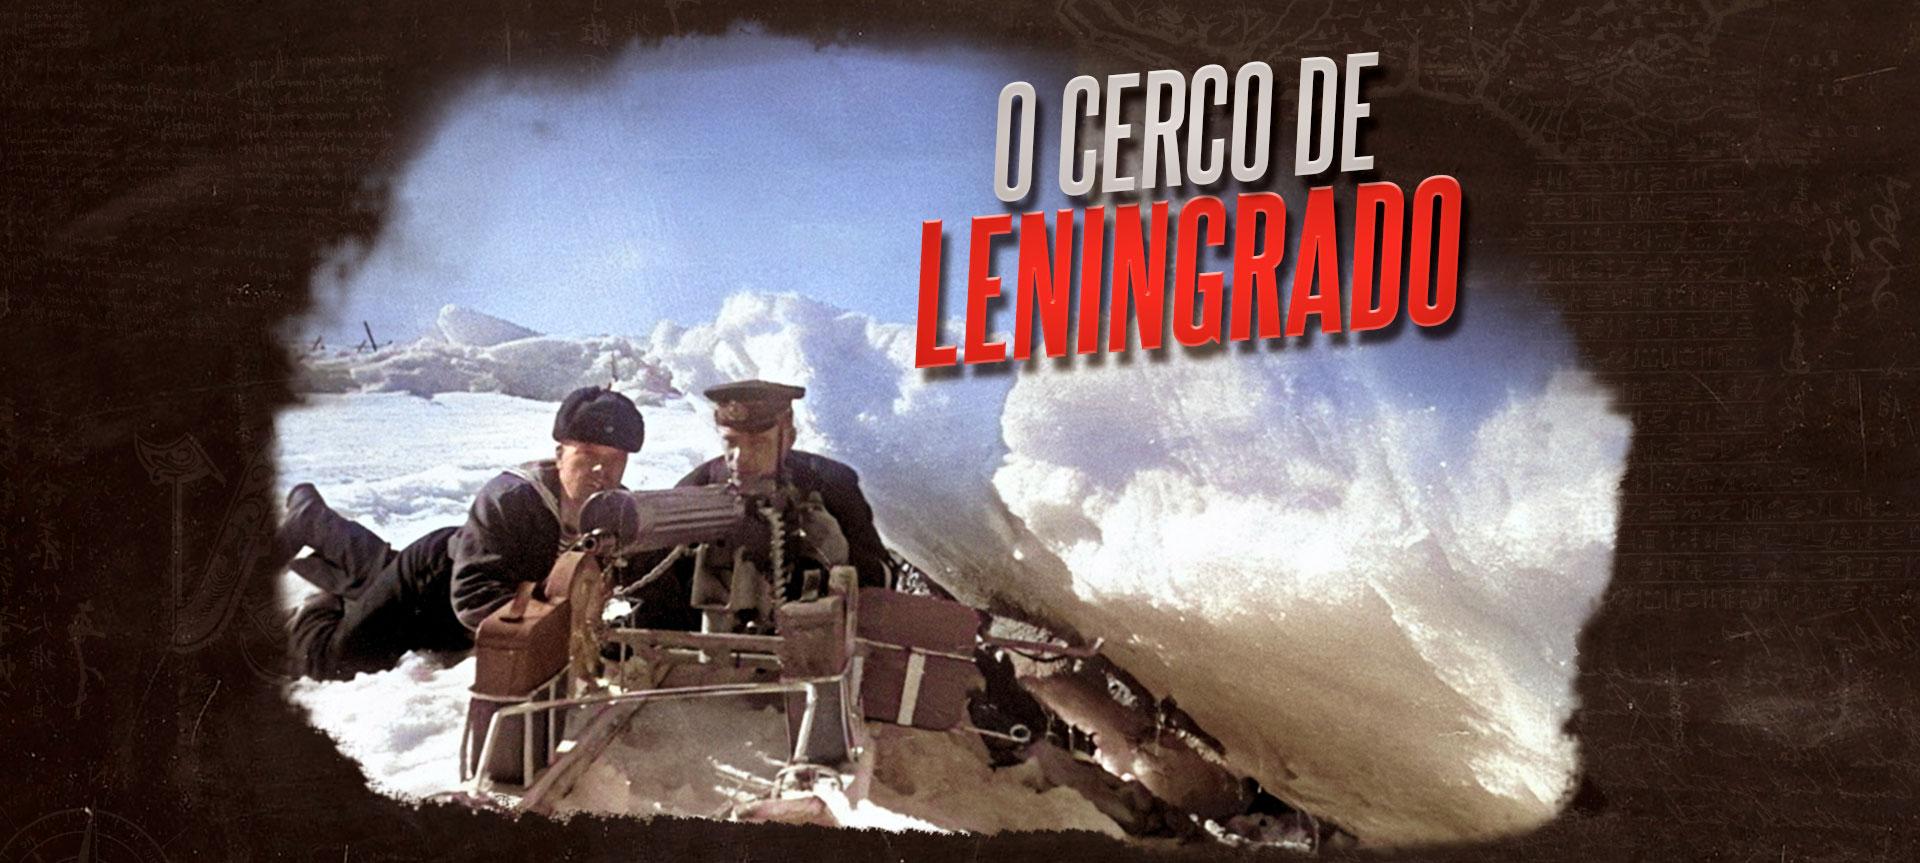 O que é e como foi o Cerco de Leningrado?